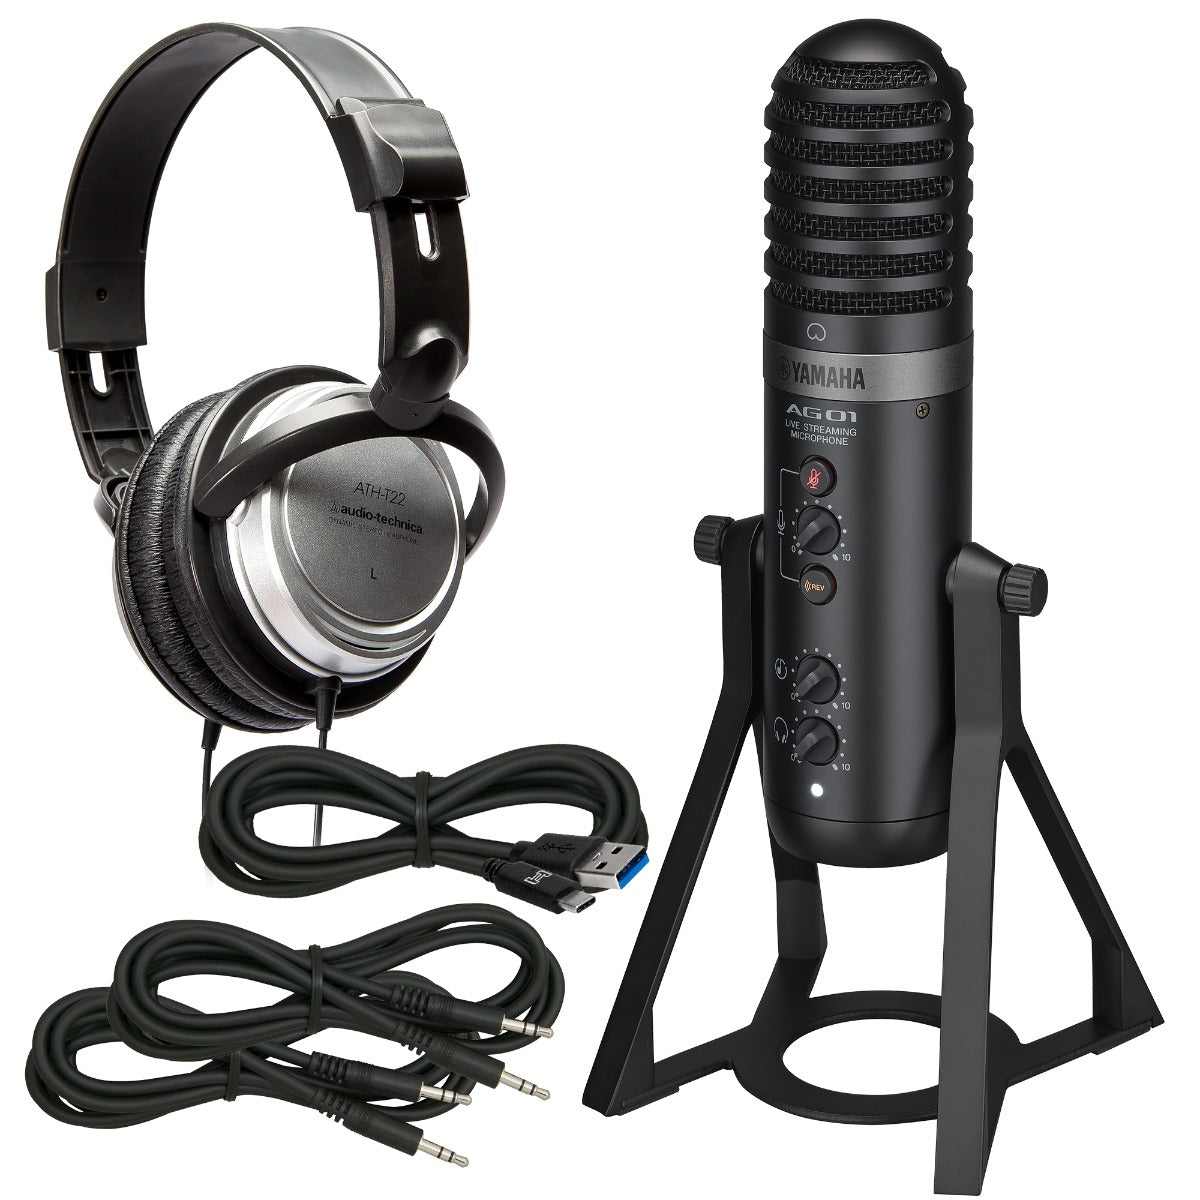 Yamaha AG01 Live Streaming USB Microphone - Black BONUS PAK